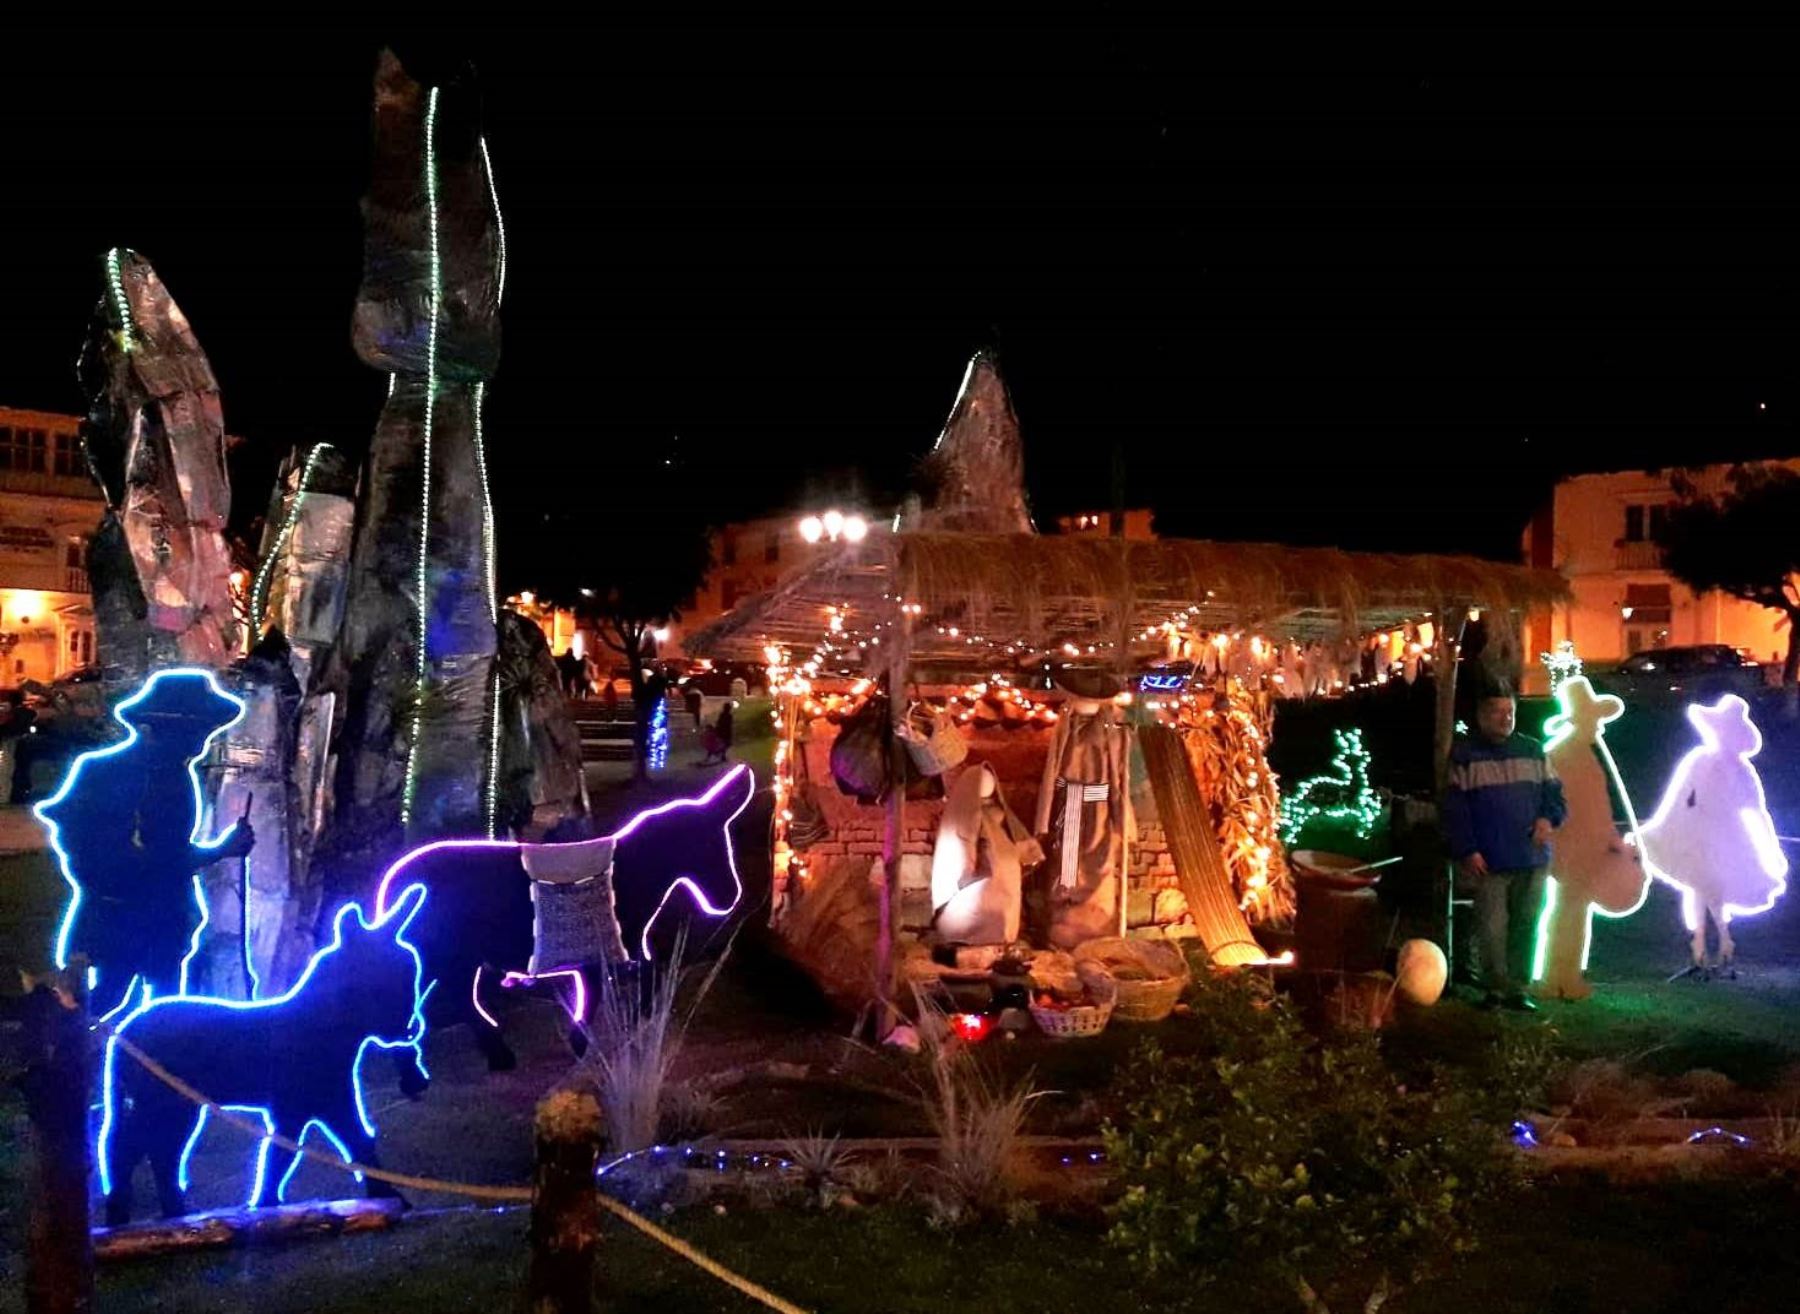 La plaza de Armas de Cajamarca se iluminará con motivos navideños por fiestas de fin de año a partir de este domingo 4 de diciembre. Foto: ANDINA/difusión.